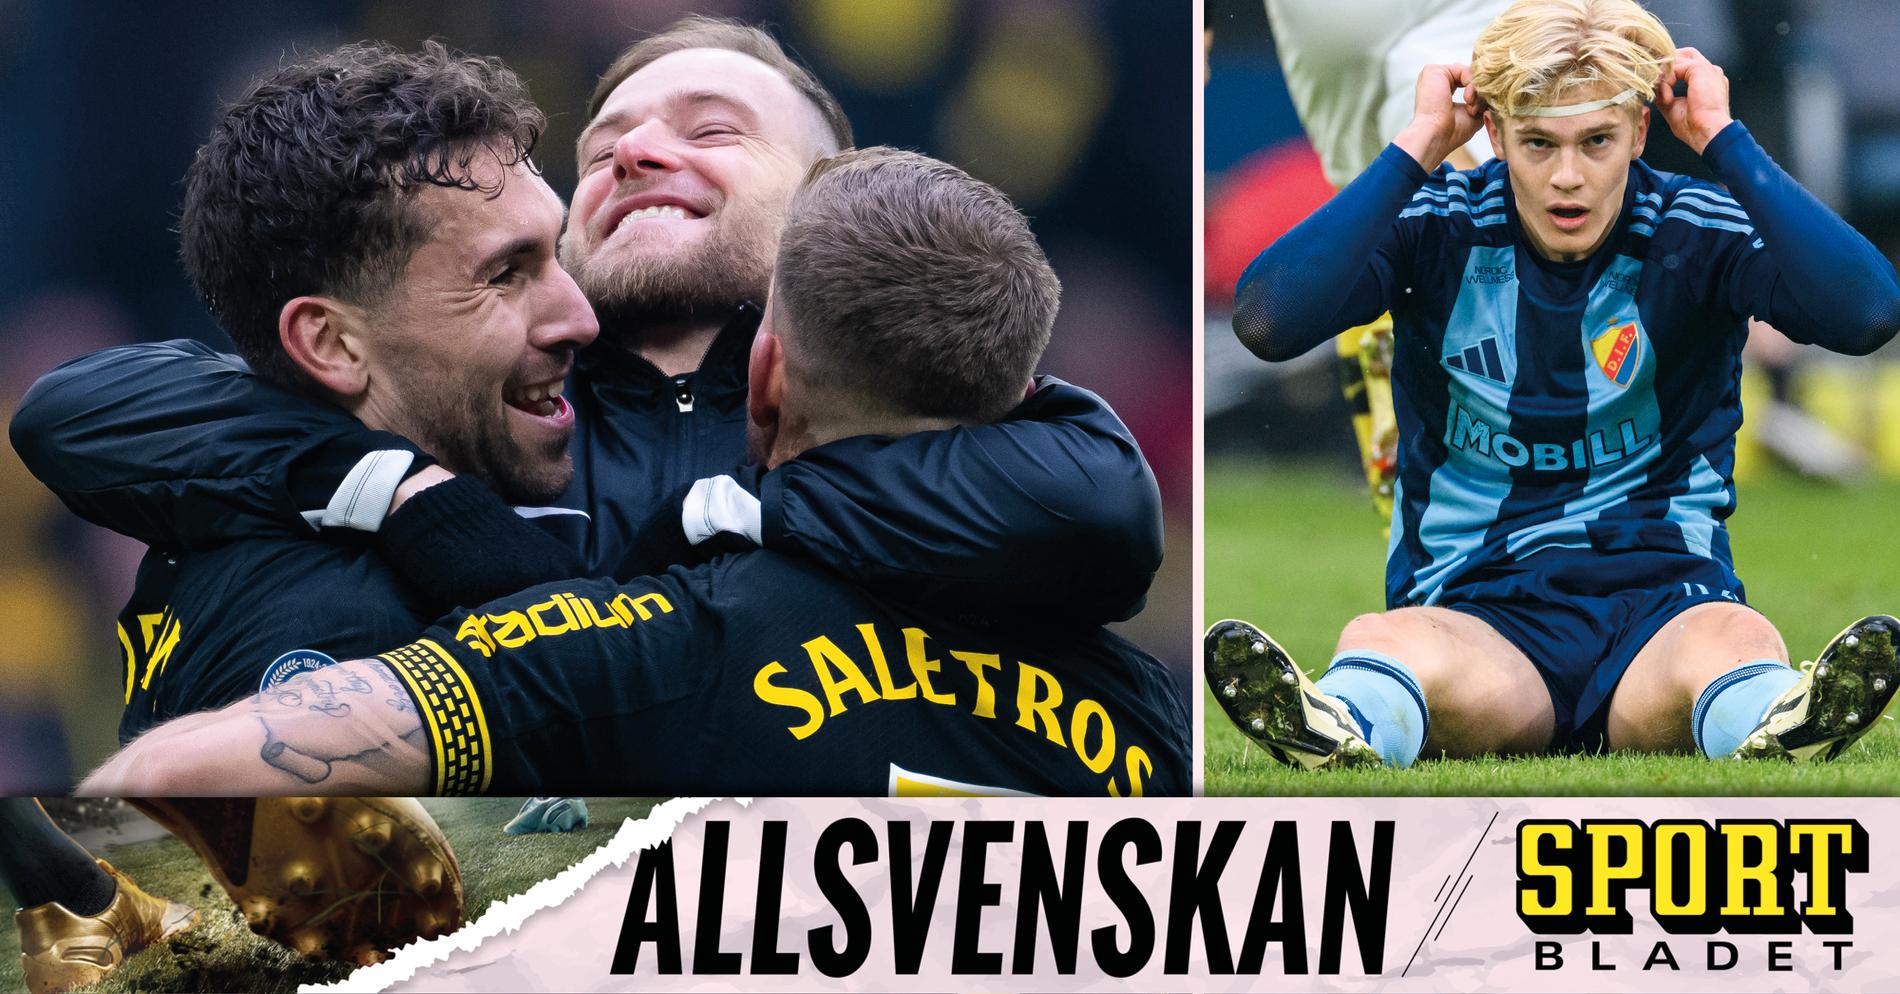 AIK Fotboll: Sportbladet allsvenskan live: Allt om derbyt mellan AIK och Djurgården